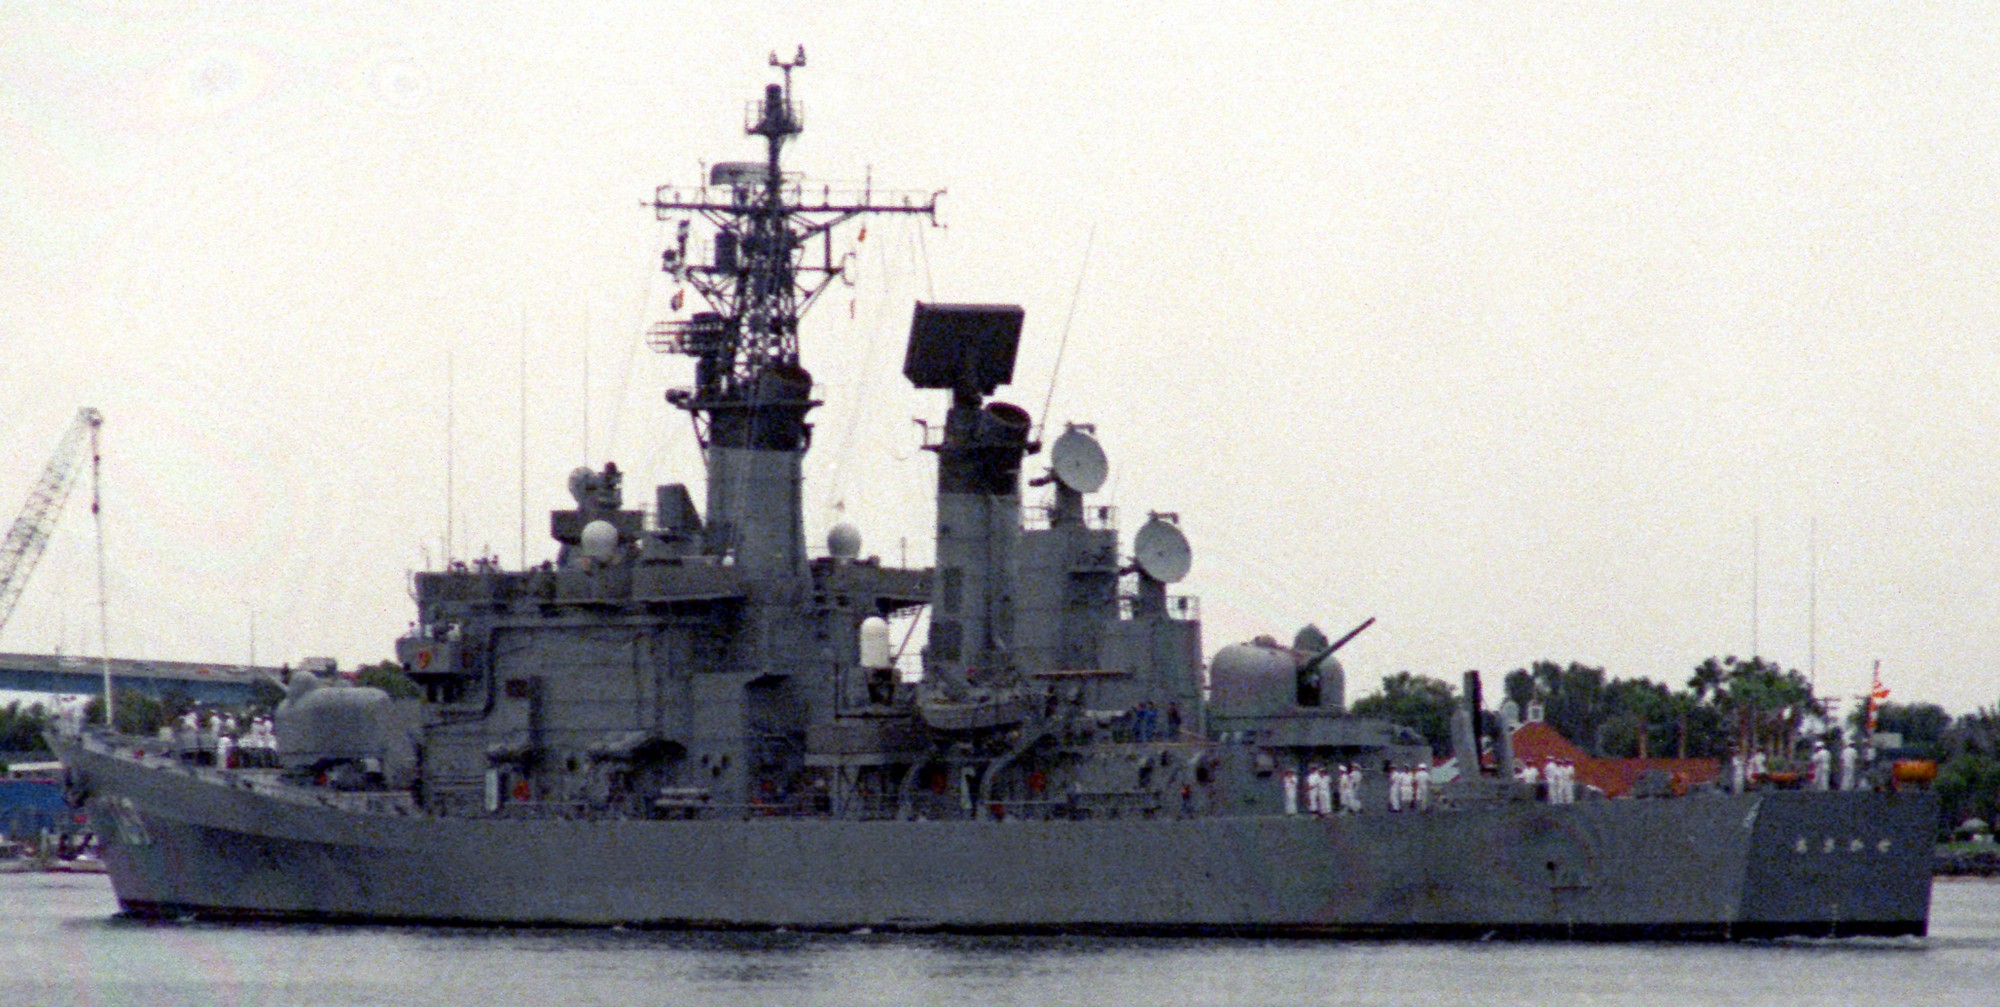 ddg-169 jds asakaze guided missile destroyer japan maritime self defense force jmsdf navy 04